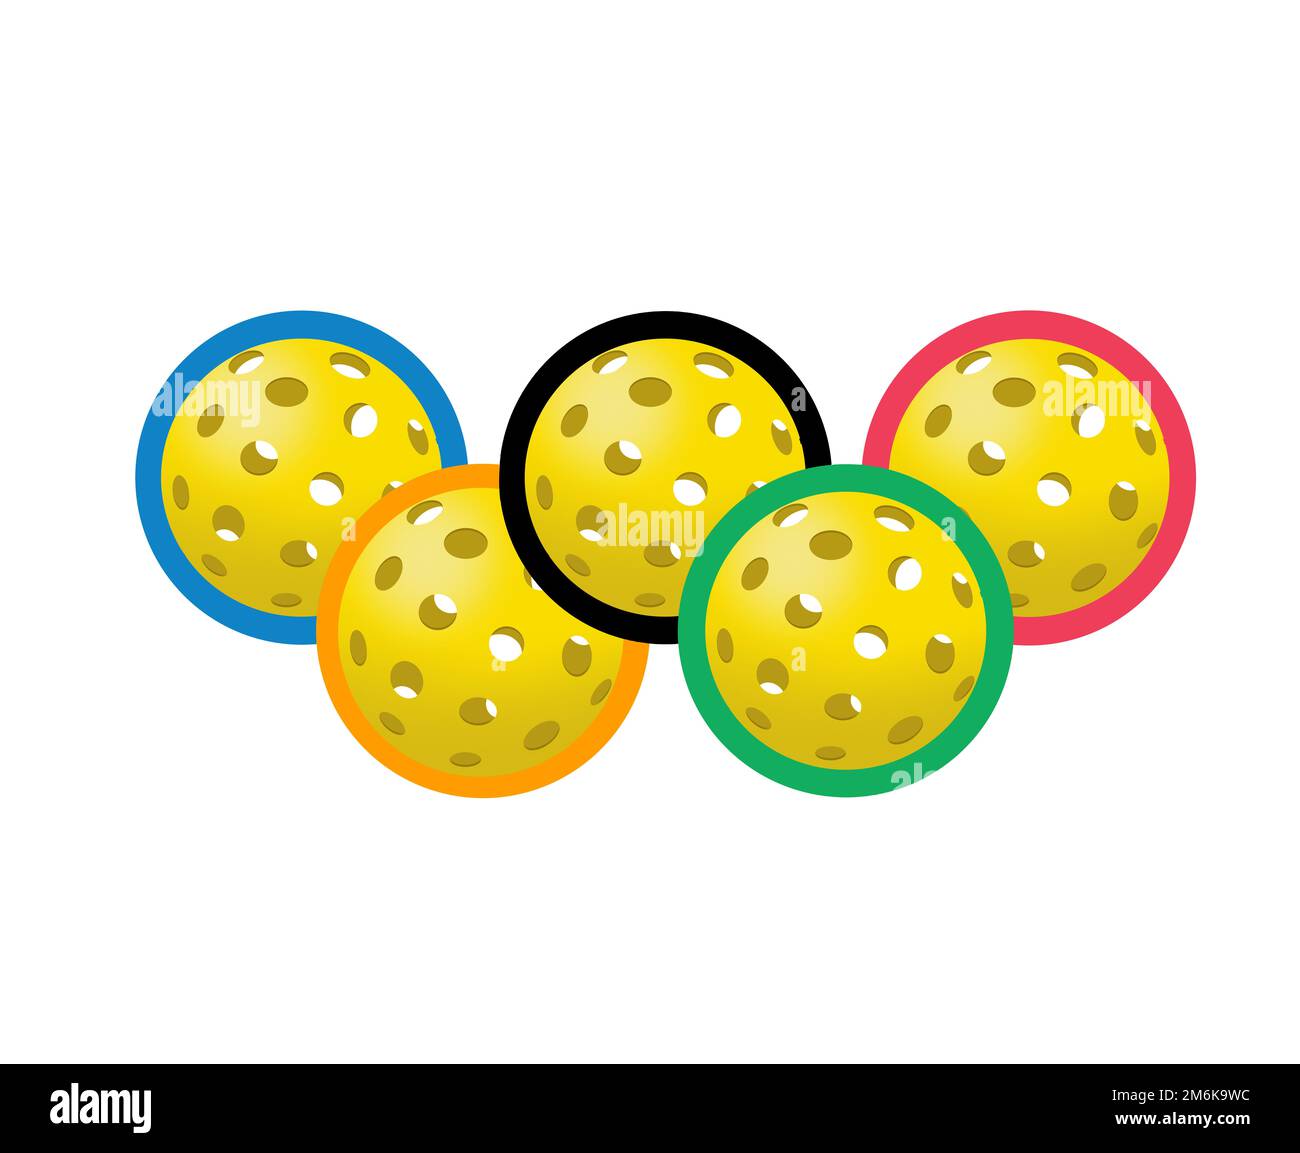 Dans cette illustration de 3 jours, les boules de pique-nichon sont représentées en couleurs et en position ressemblant au logo des Jeux Olympiques. Le pickle olympique est une possibilité pour 2028 A. Banque D'Images